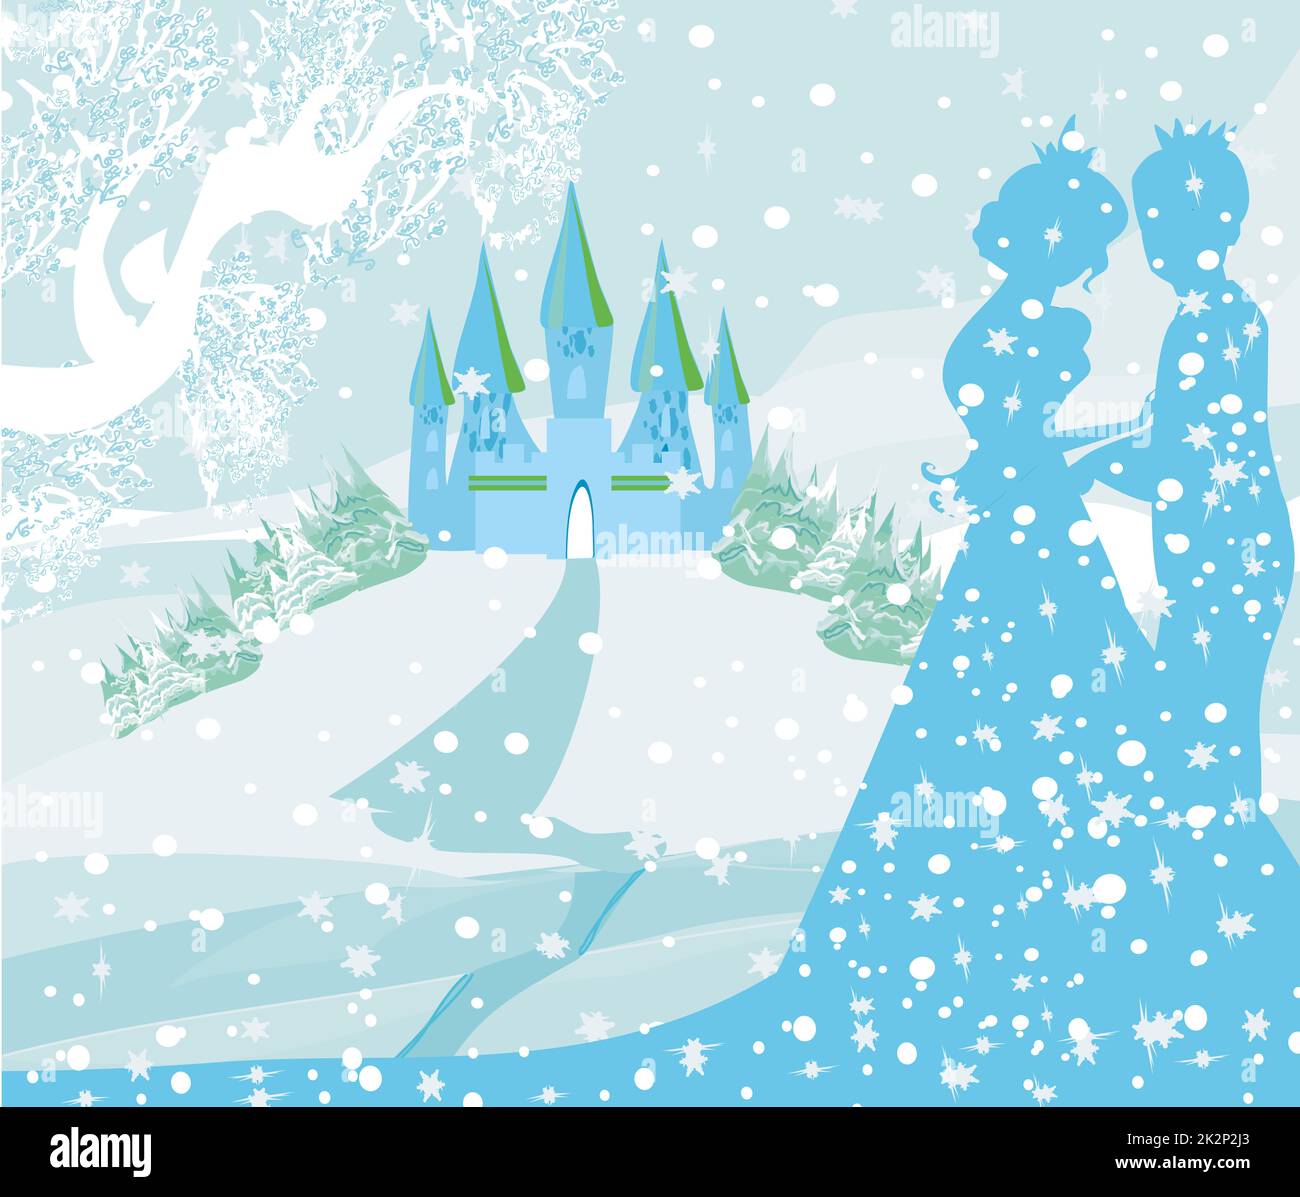 Рисунок замок принцессы и принца Снежная Королева